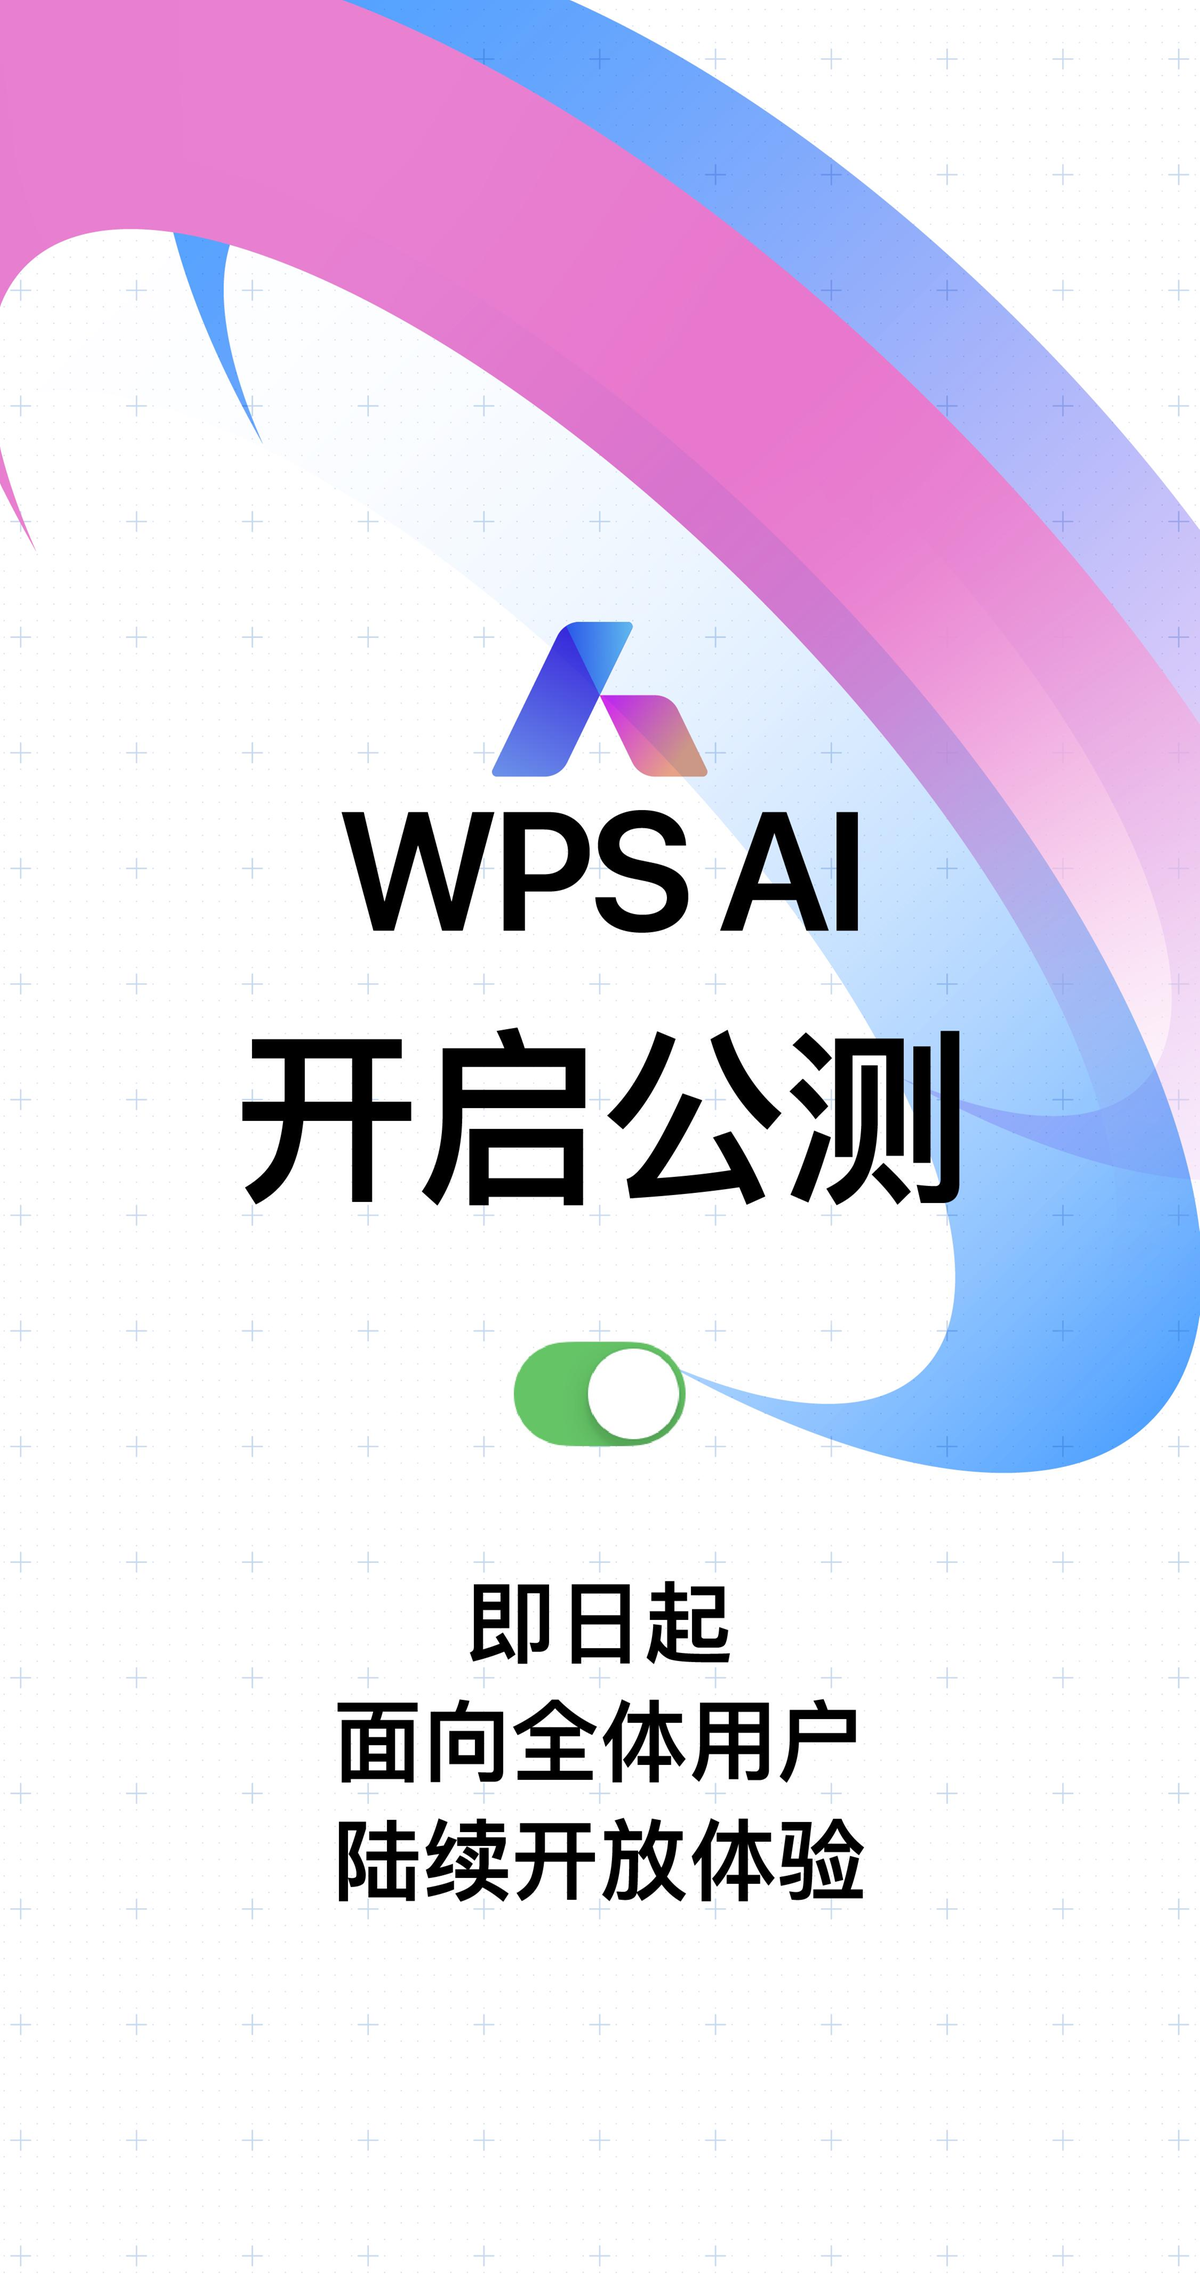 WPS AI开启公测，面向全体用户陆续开放体验